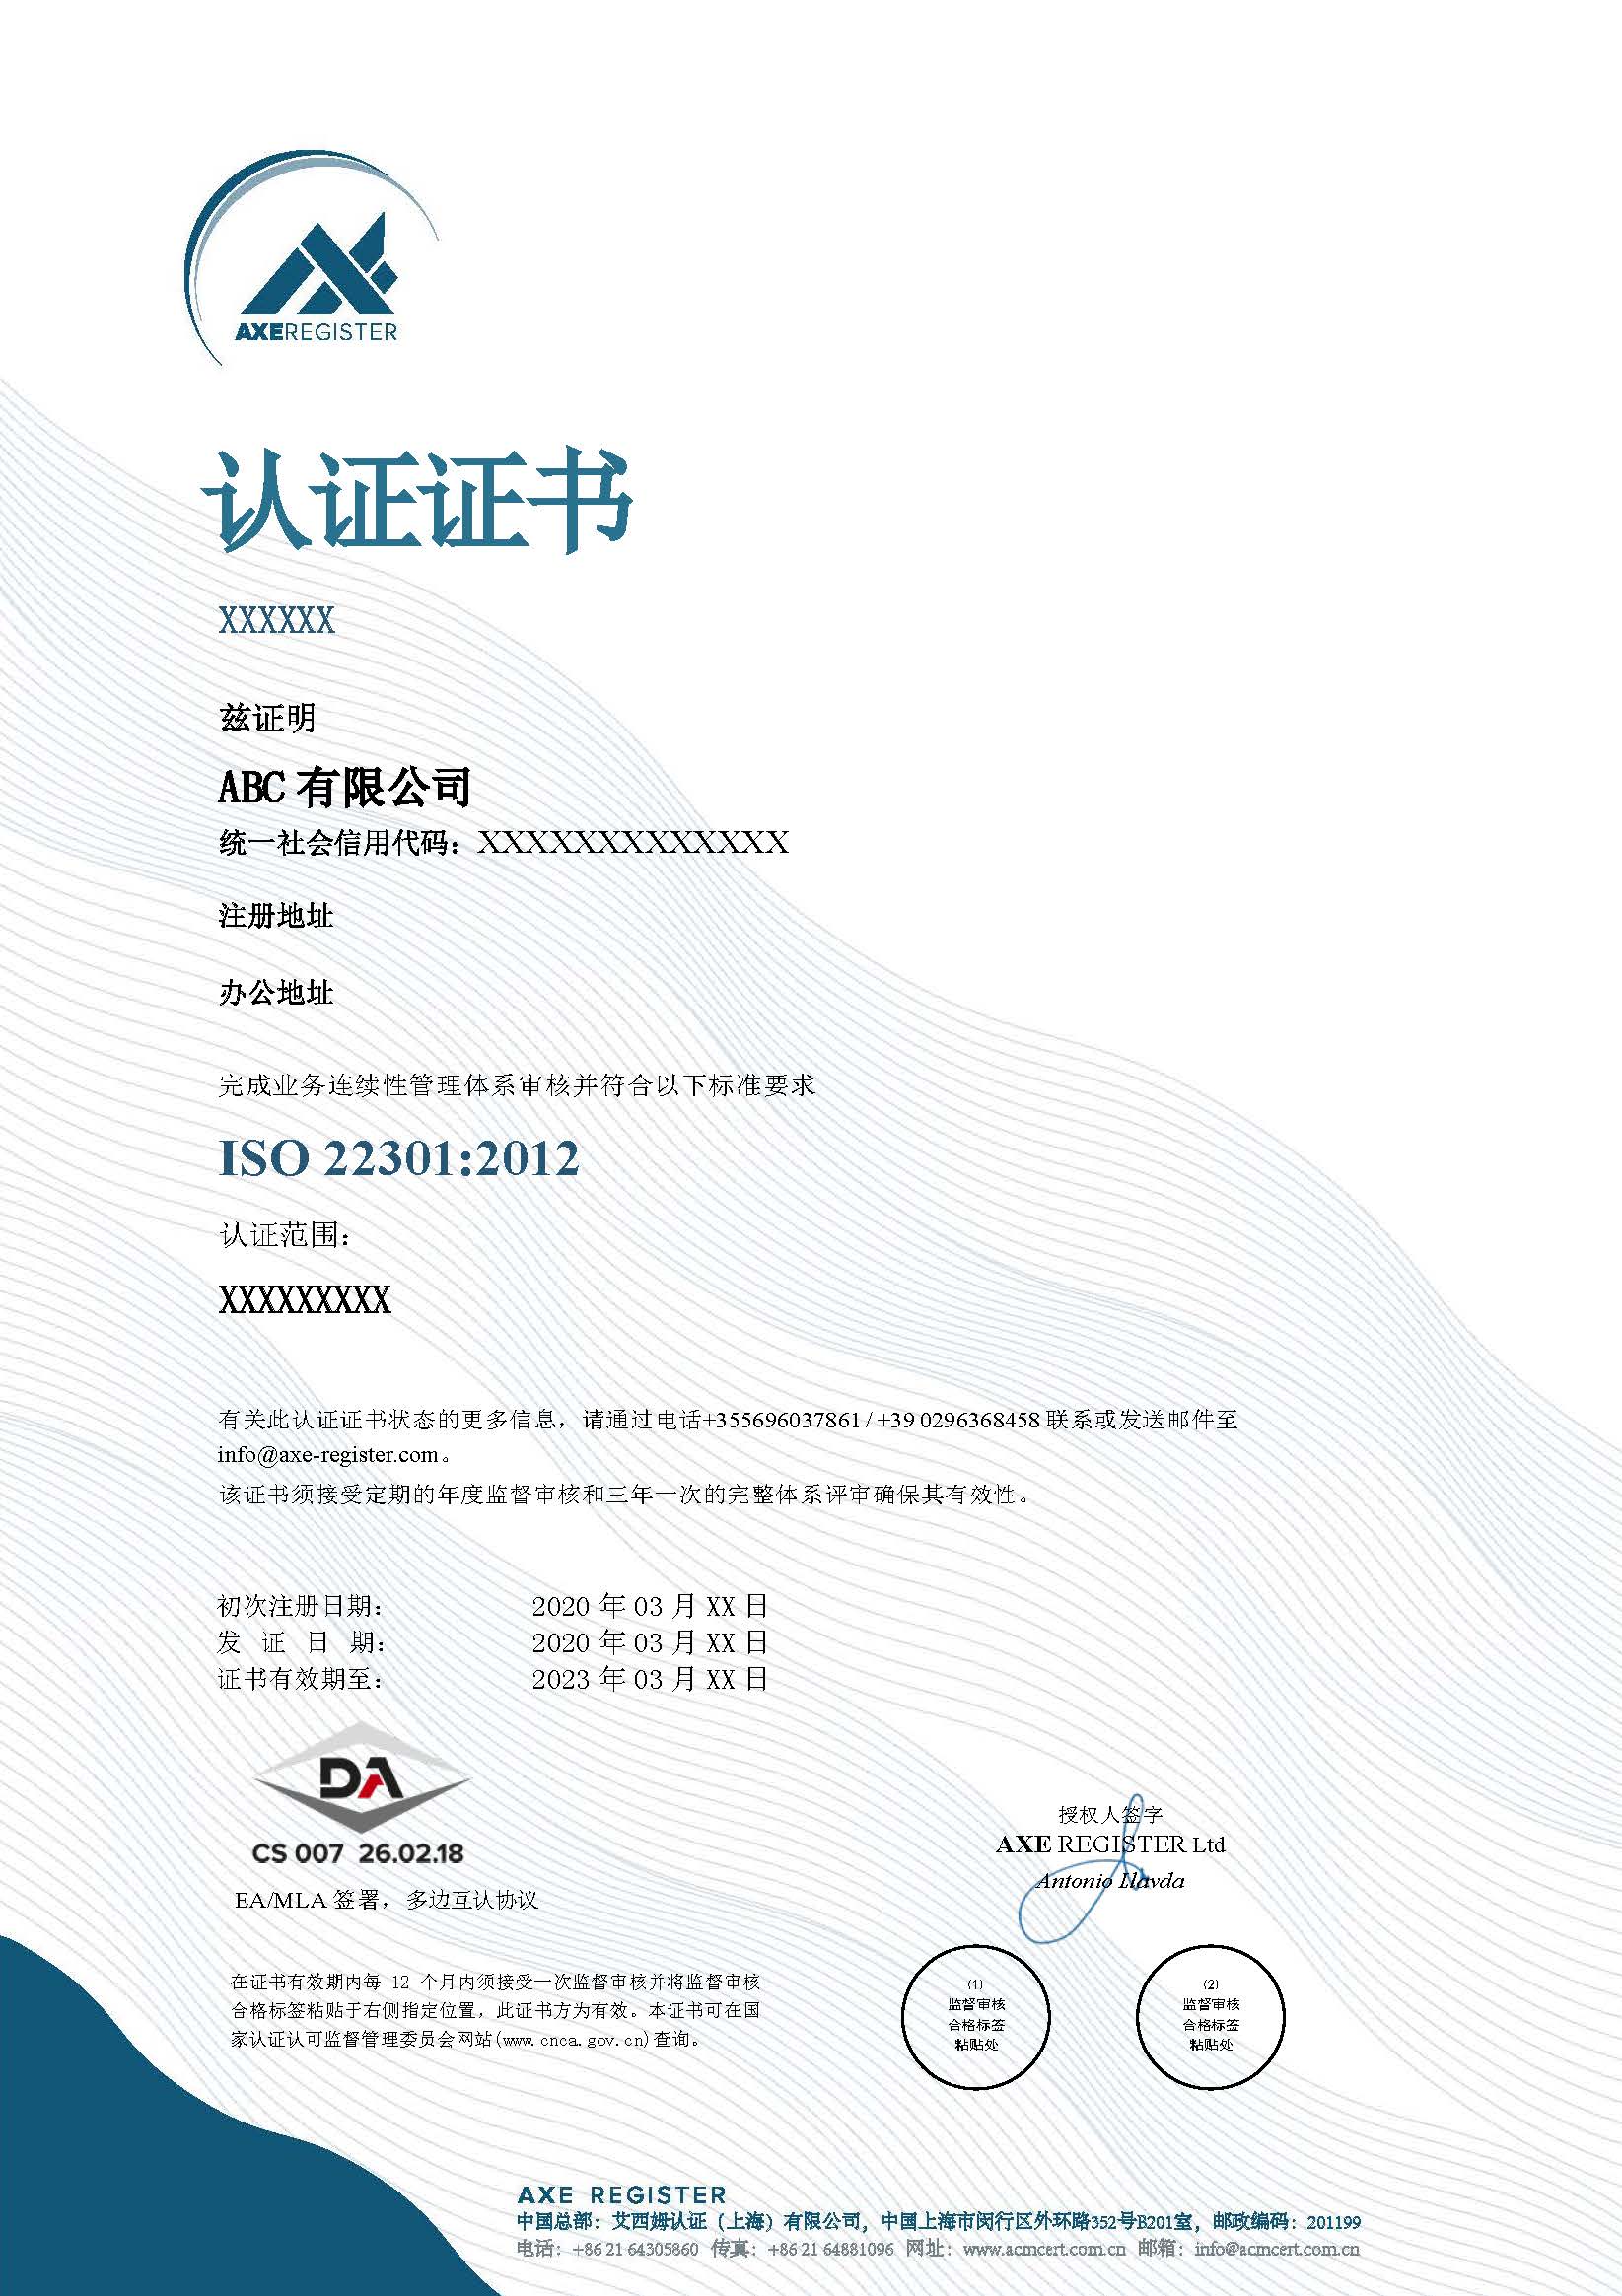 22301证书样本 DA_中文.jpg